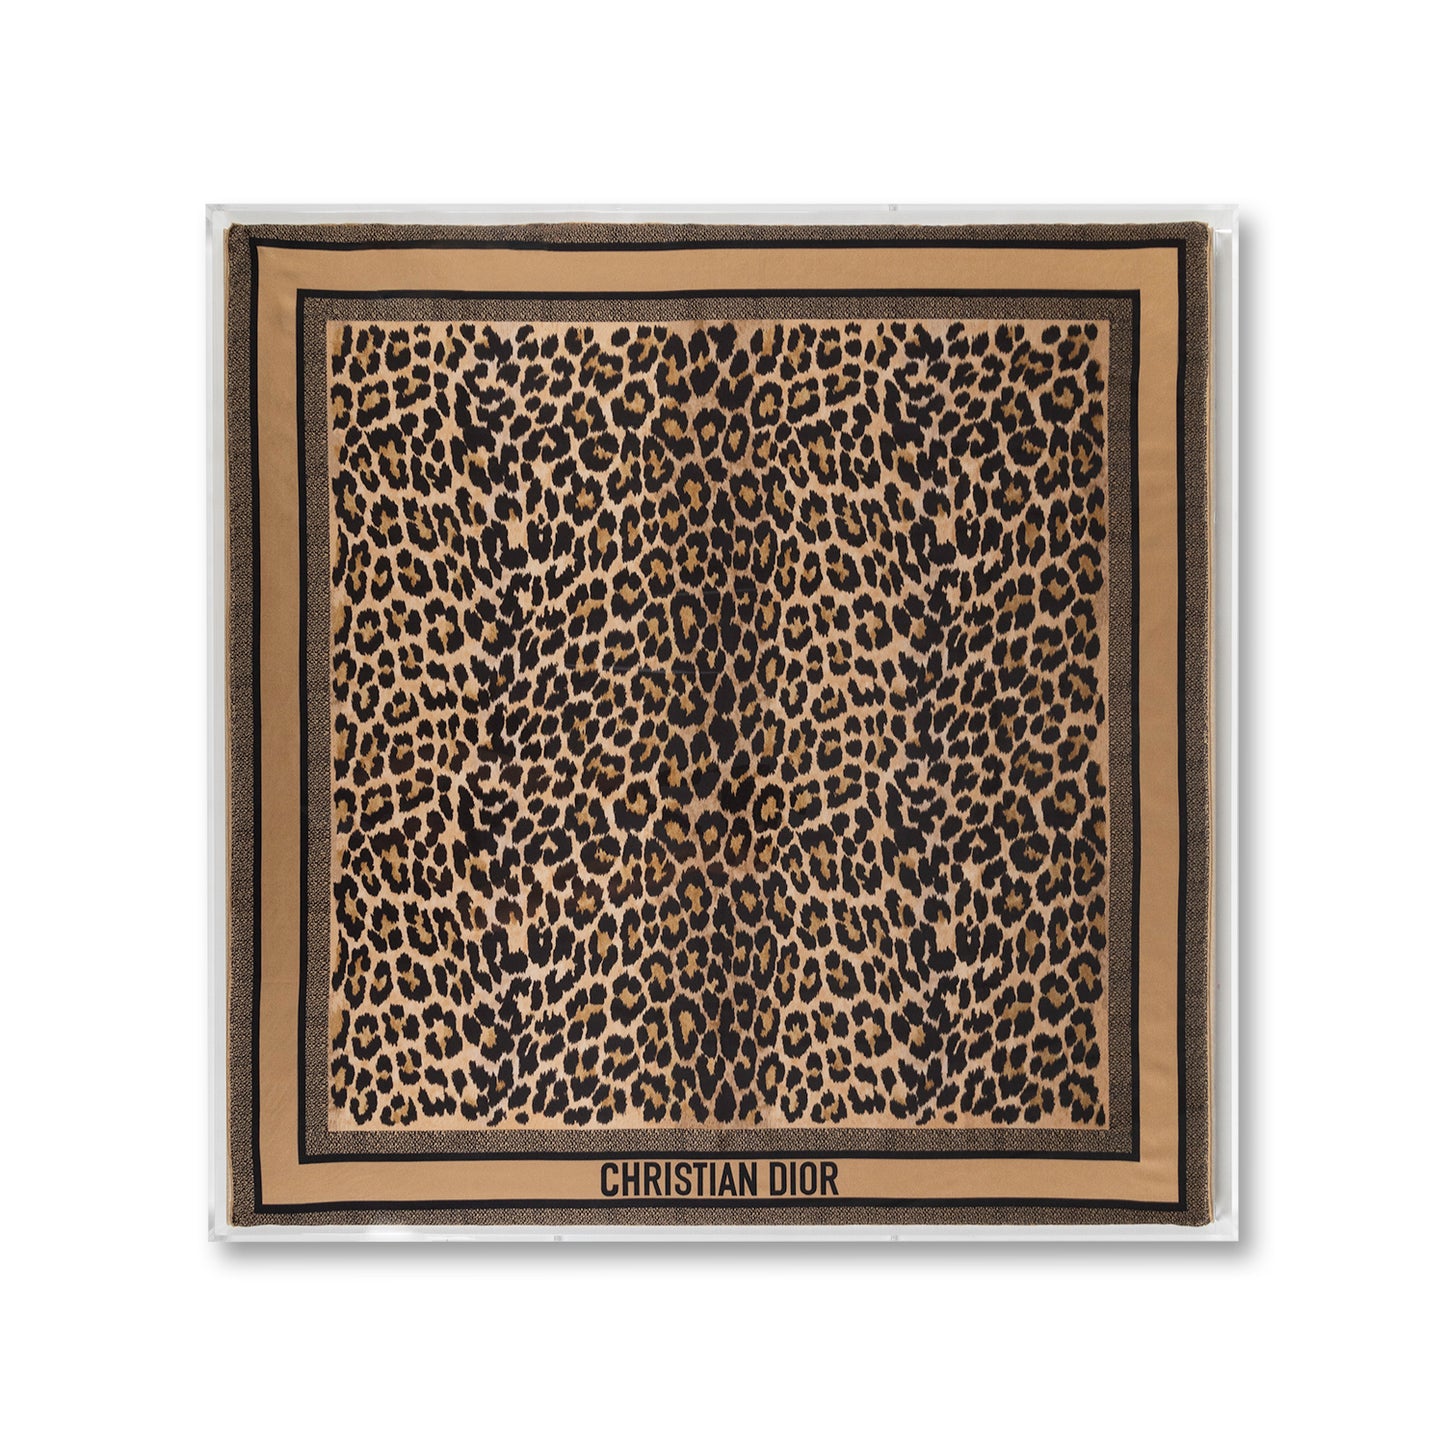 Framed Christian Dior Leopard Scarf in a 36x36x2" Shadowbox